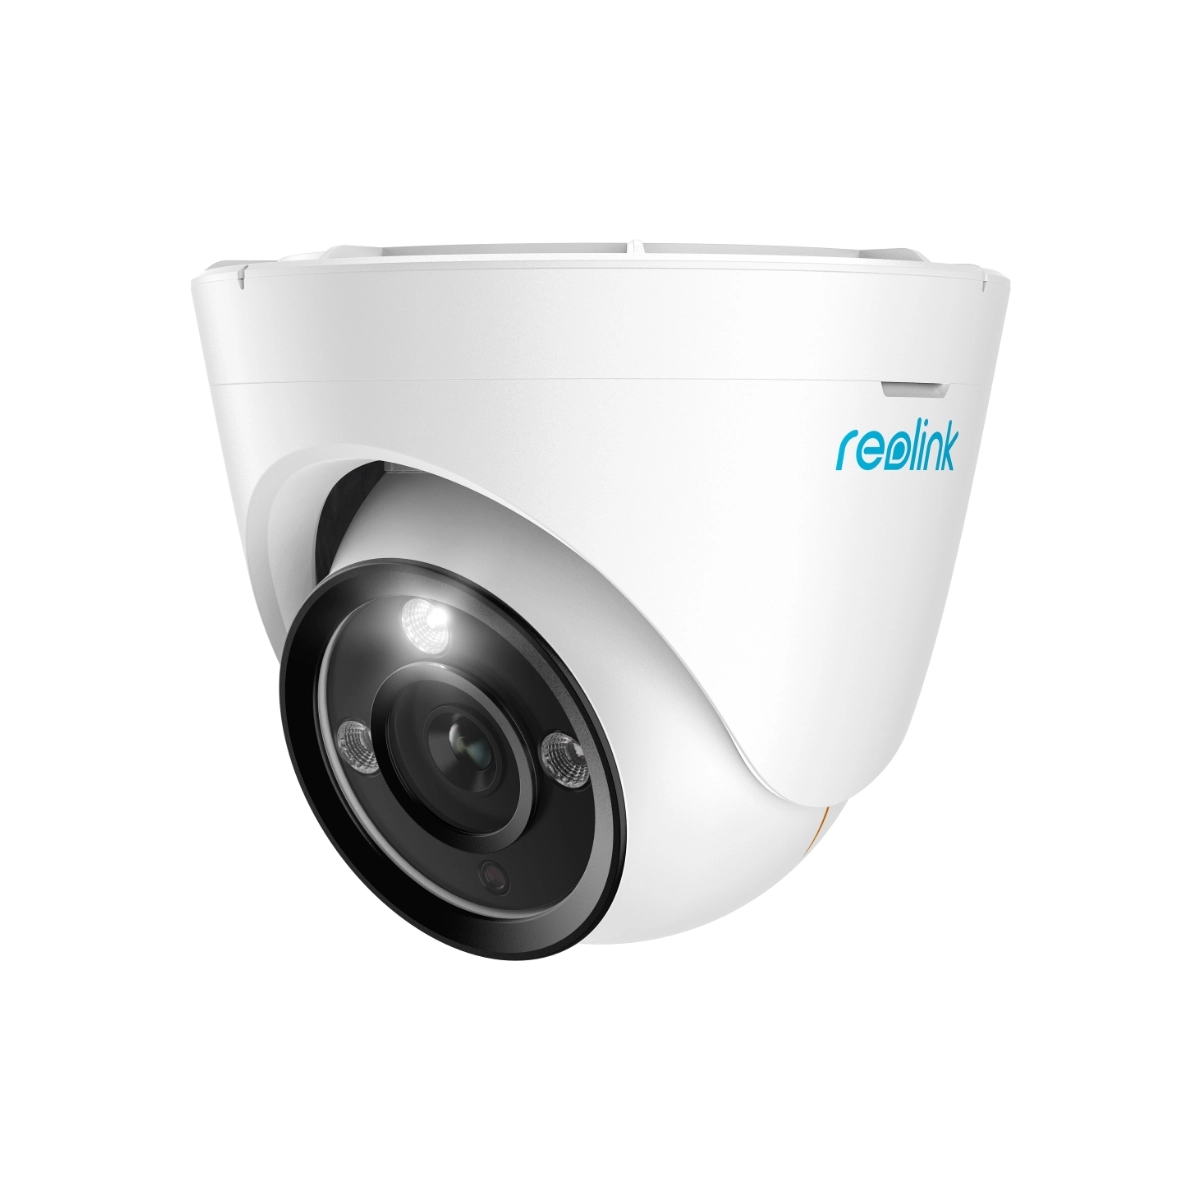 Reolink RLC-833A – 4K Überwachungskamera mit Farbnachtsicht, 3X optischer Zoom, Personen-/Fahrzeugerkennung,2-Wege-Audio, Sirene, IoT, IP66.